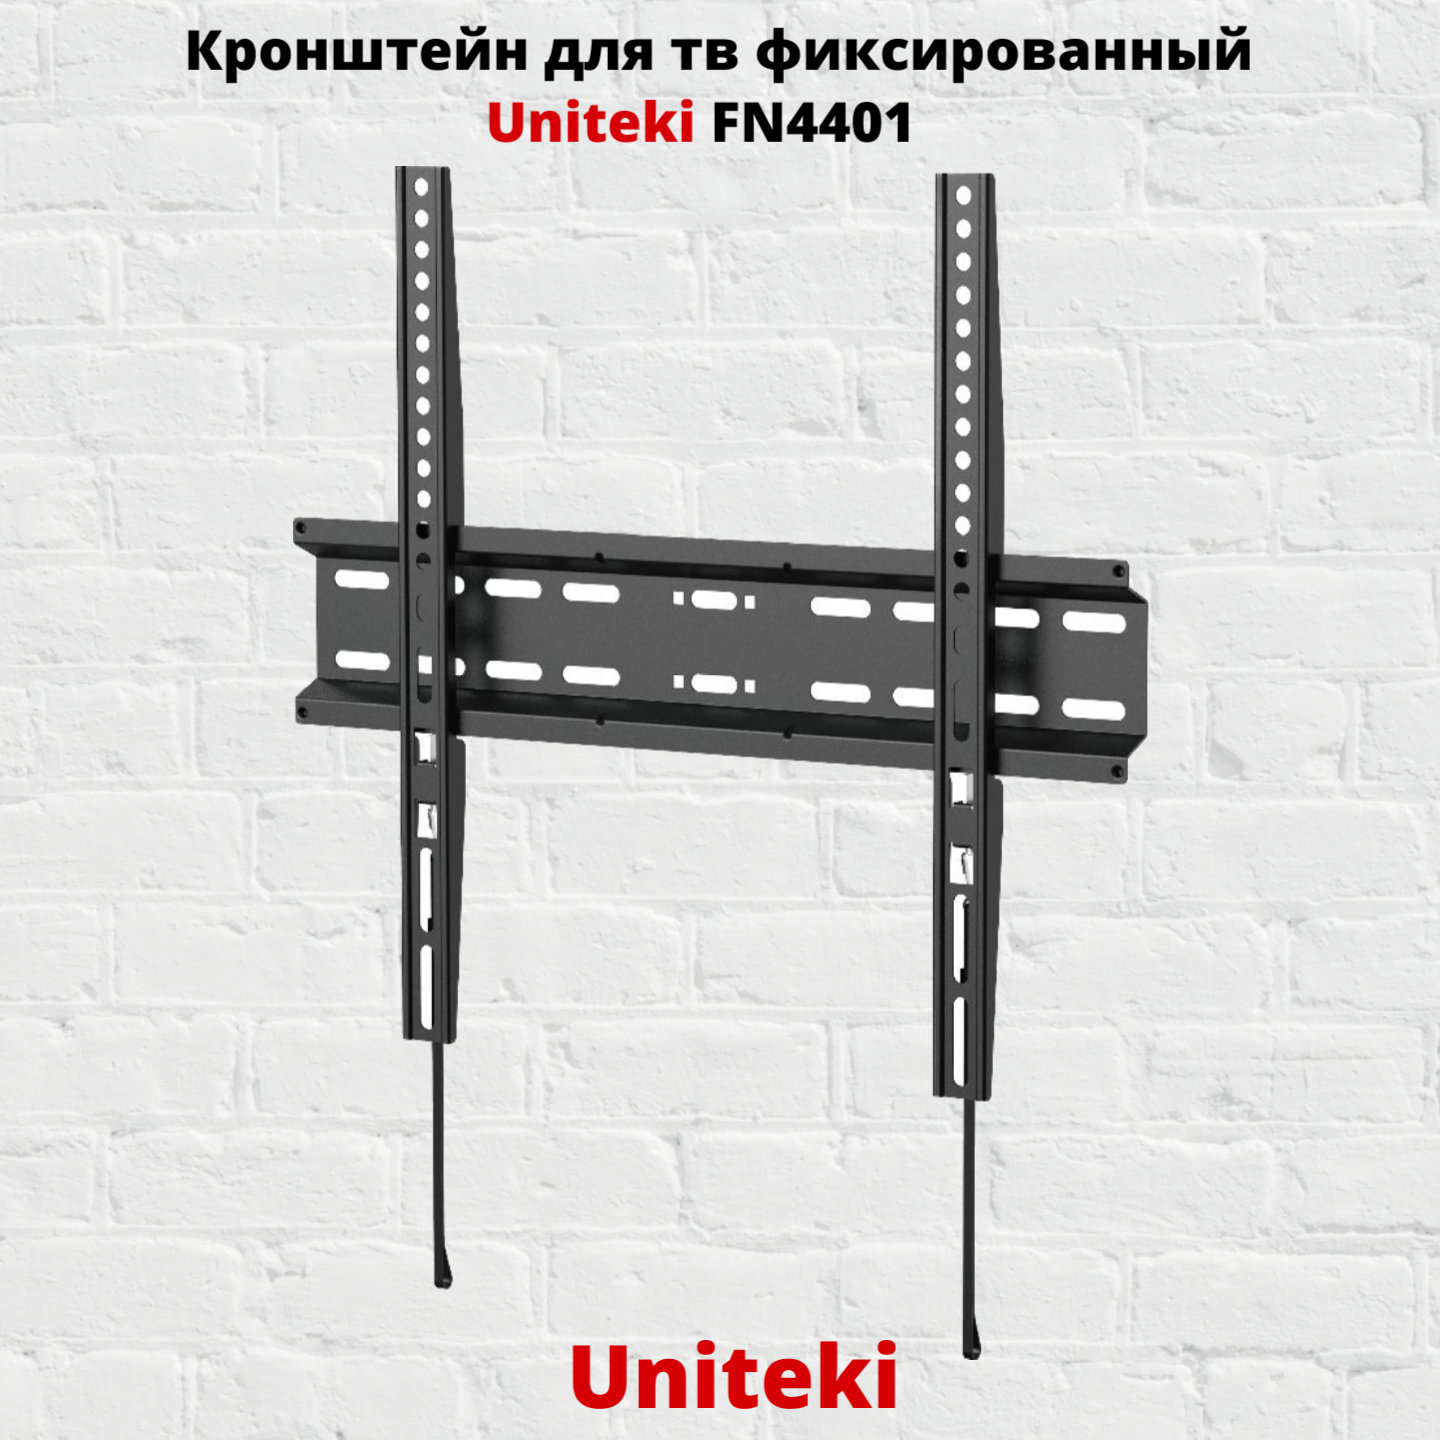 Фиксированный кронштейн для телевизора Uniteki FN4401 32-55 черный